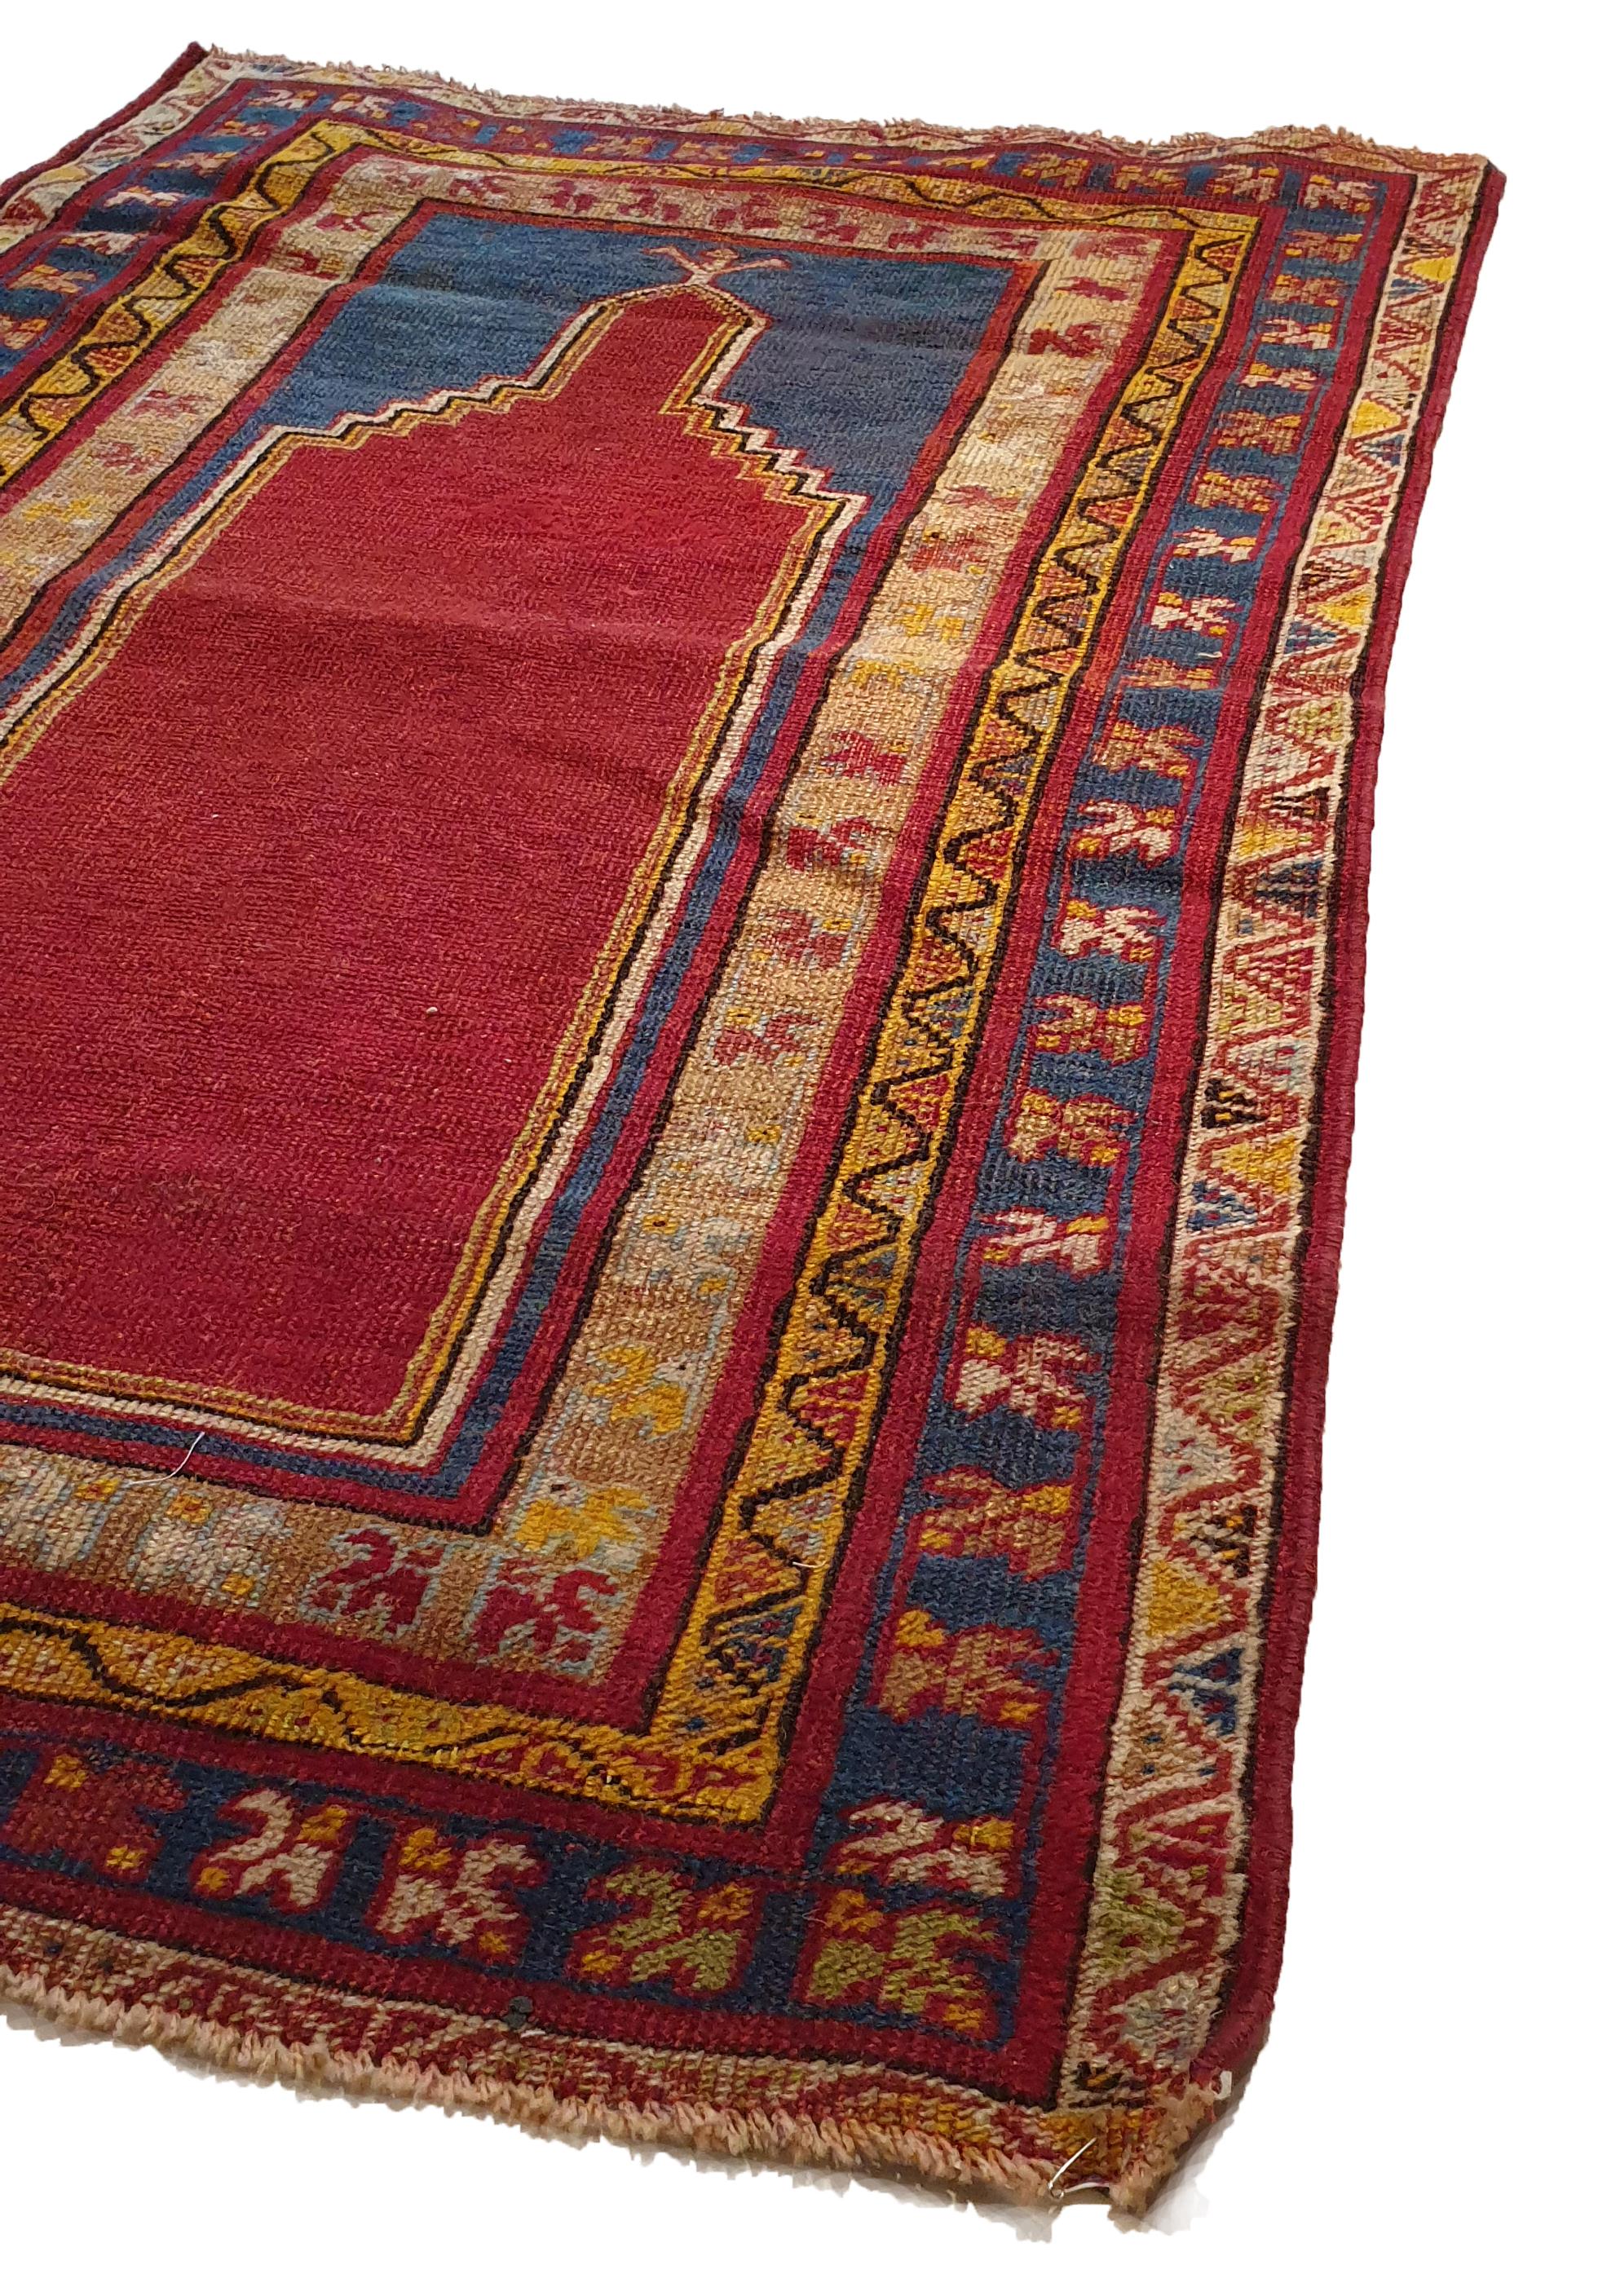 Handgeknüpfter Teppich in einer türkischen Fabrik.
Hohe Qualität, schöne Grafiken und bemerkenswerte Finesse.
Perfekter Erhaltungszustand.

Abmessungen: 127 x 80 cm.